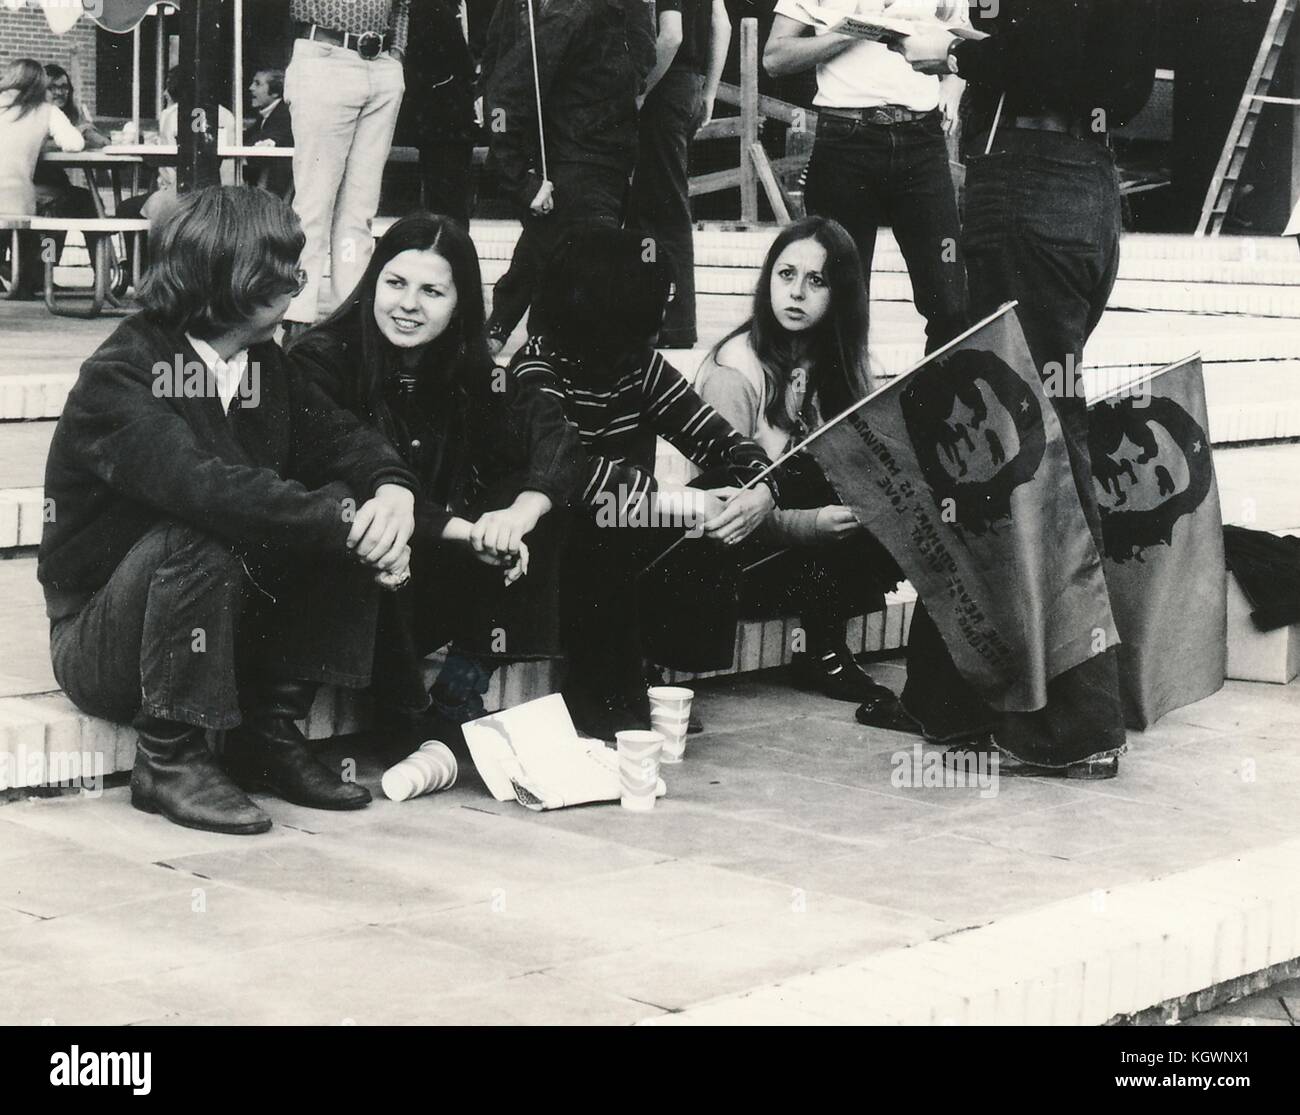 Due gli studenti maschi e due femmine tutti indossano costumi hippie sedersi insieme e parlare in una serie di fasi con due studenti in possesso della bandiere con la faccia del rivoluzionario che Guevara, durante un anti guerra del Vietnam studente il sit-in di protesta presso la North Carolina State University di Raleigh, North Carolina, 1970. () Foto Stock